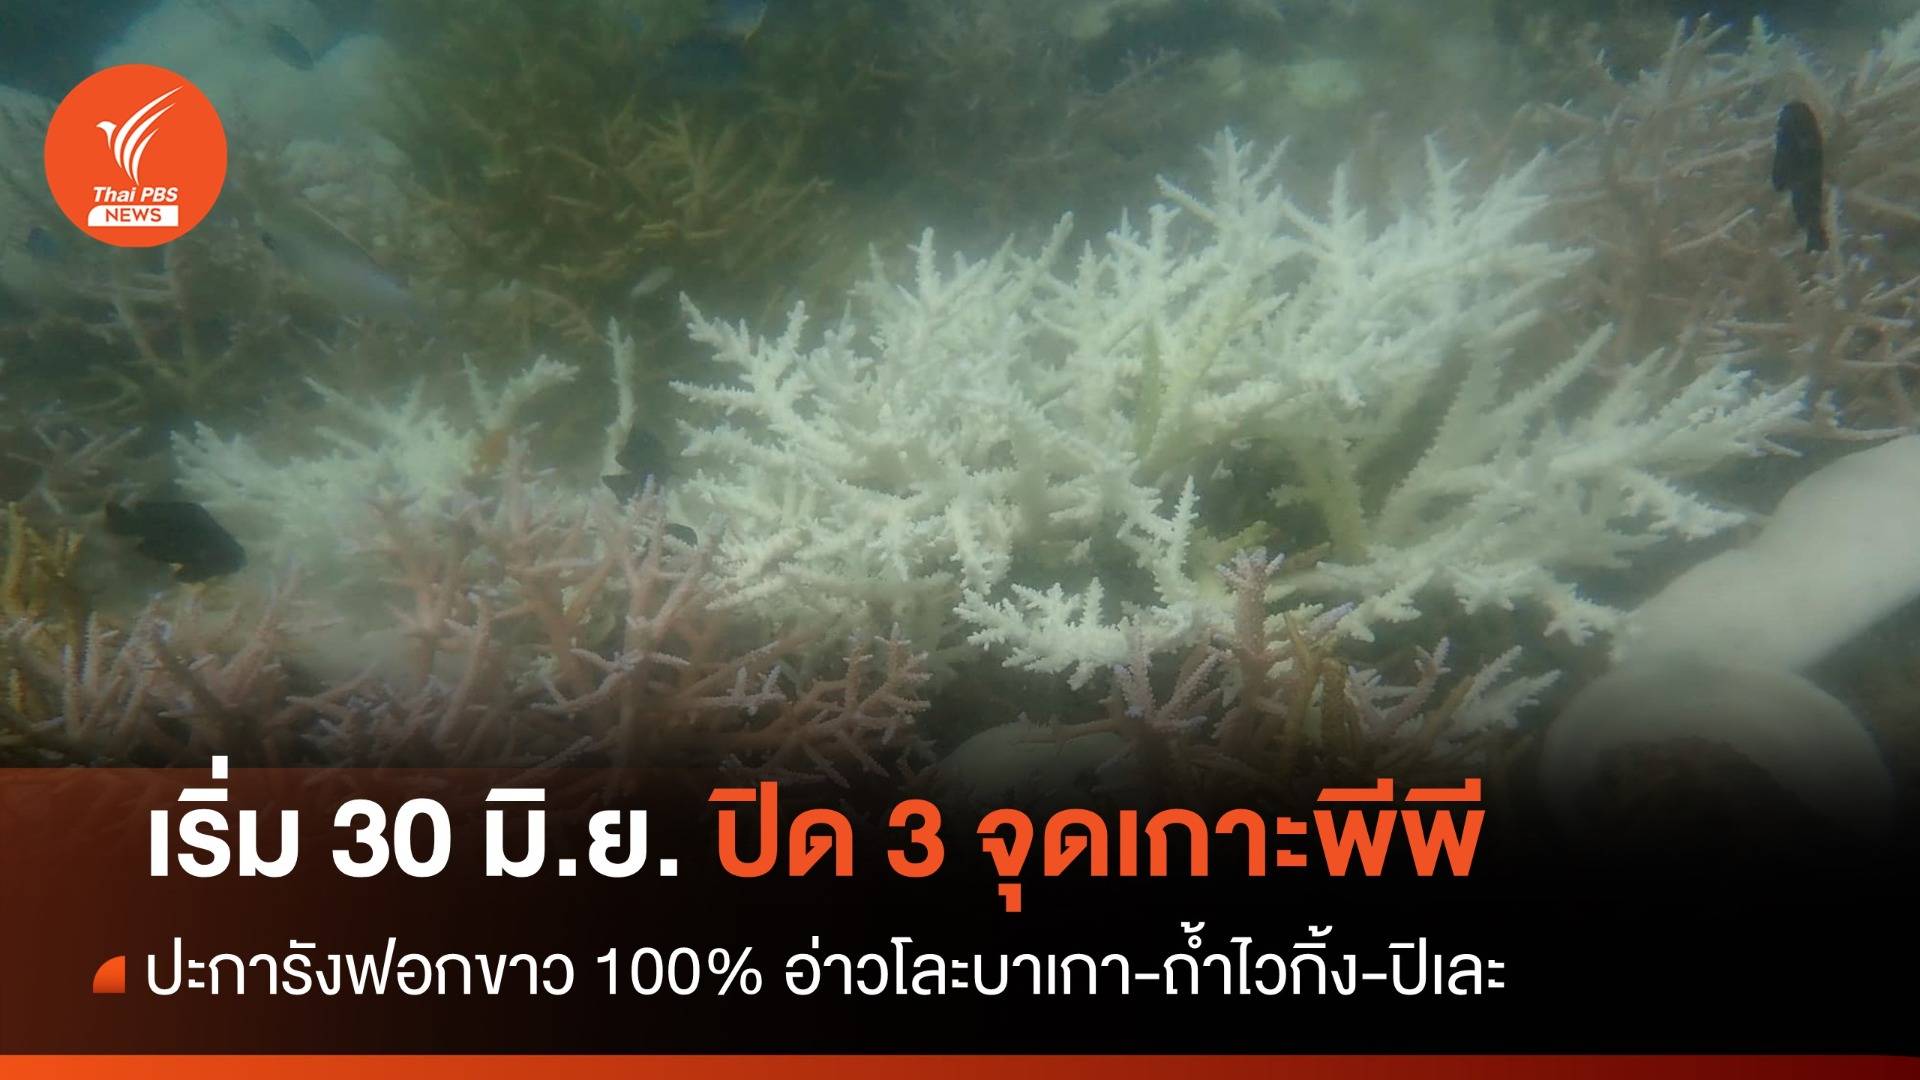 ดีเดย์ 30 มิ.ย.ปิดอ่าวโละบาเกา-ถ้ำไวกิ้ง-ปิเละ ปะการังฟอกขาวหนัก